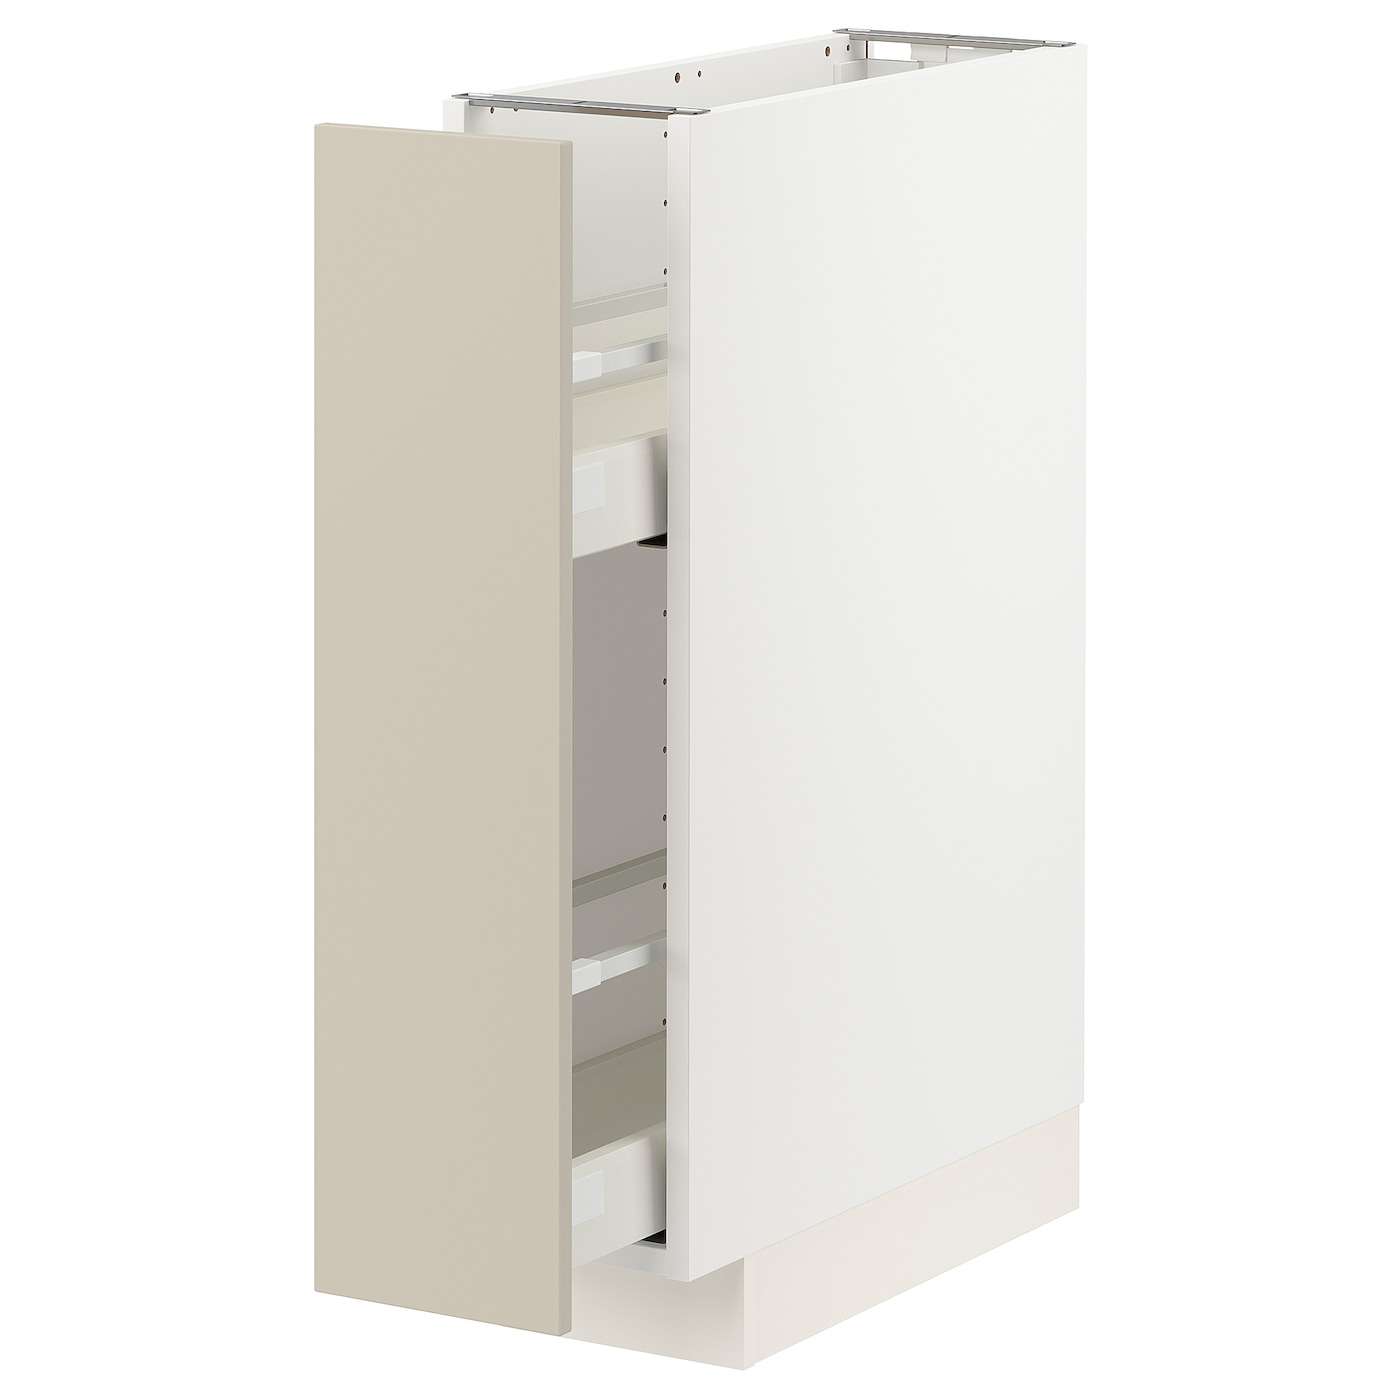 Напольный кухонный шкаф - IKEA METOD MAXIMERA, 88x62x20см, белый/бежевый, МЕТОД МАКСИМЕРА ИКЕА